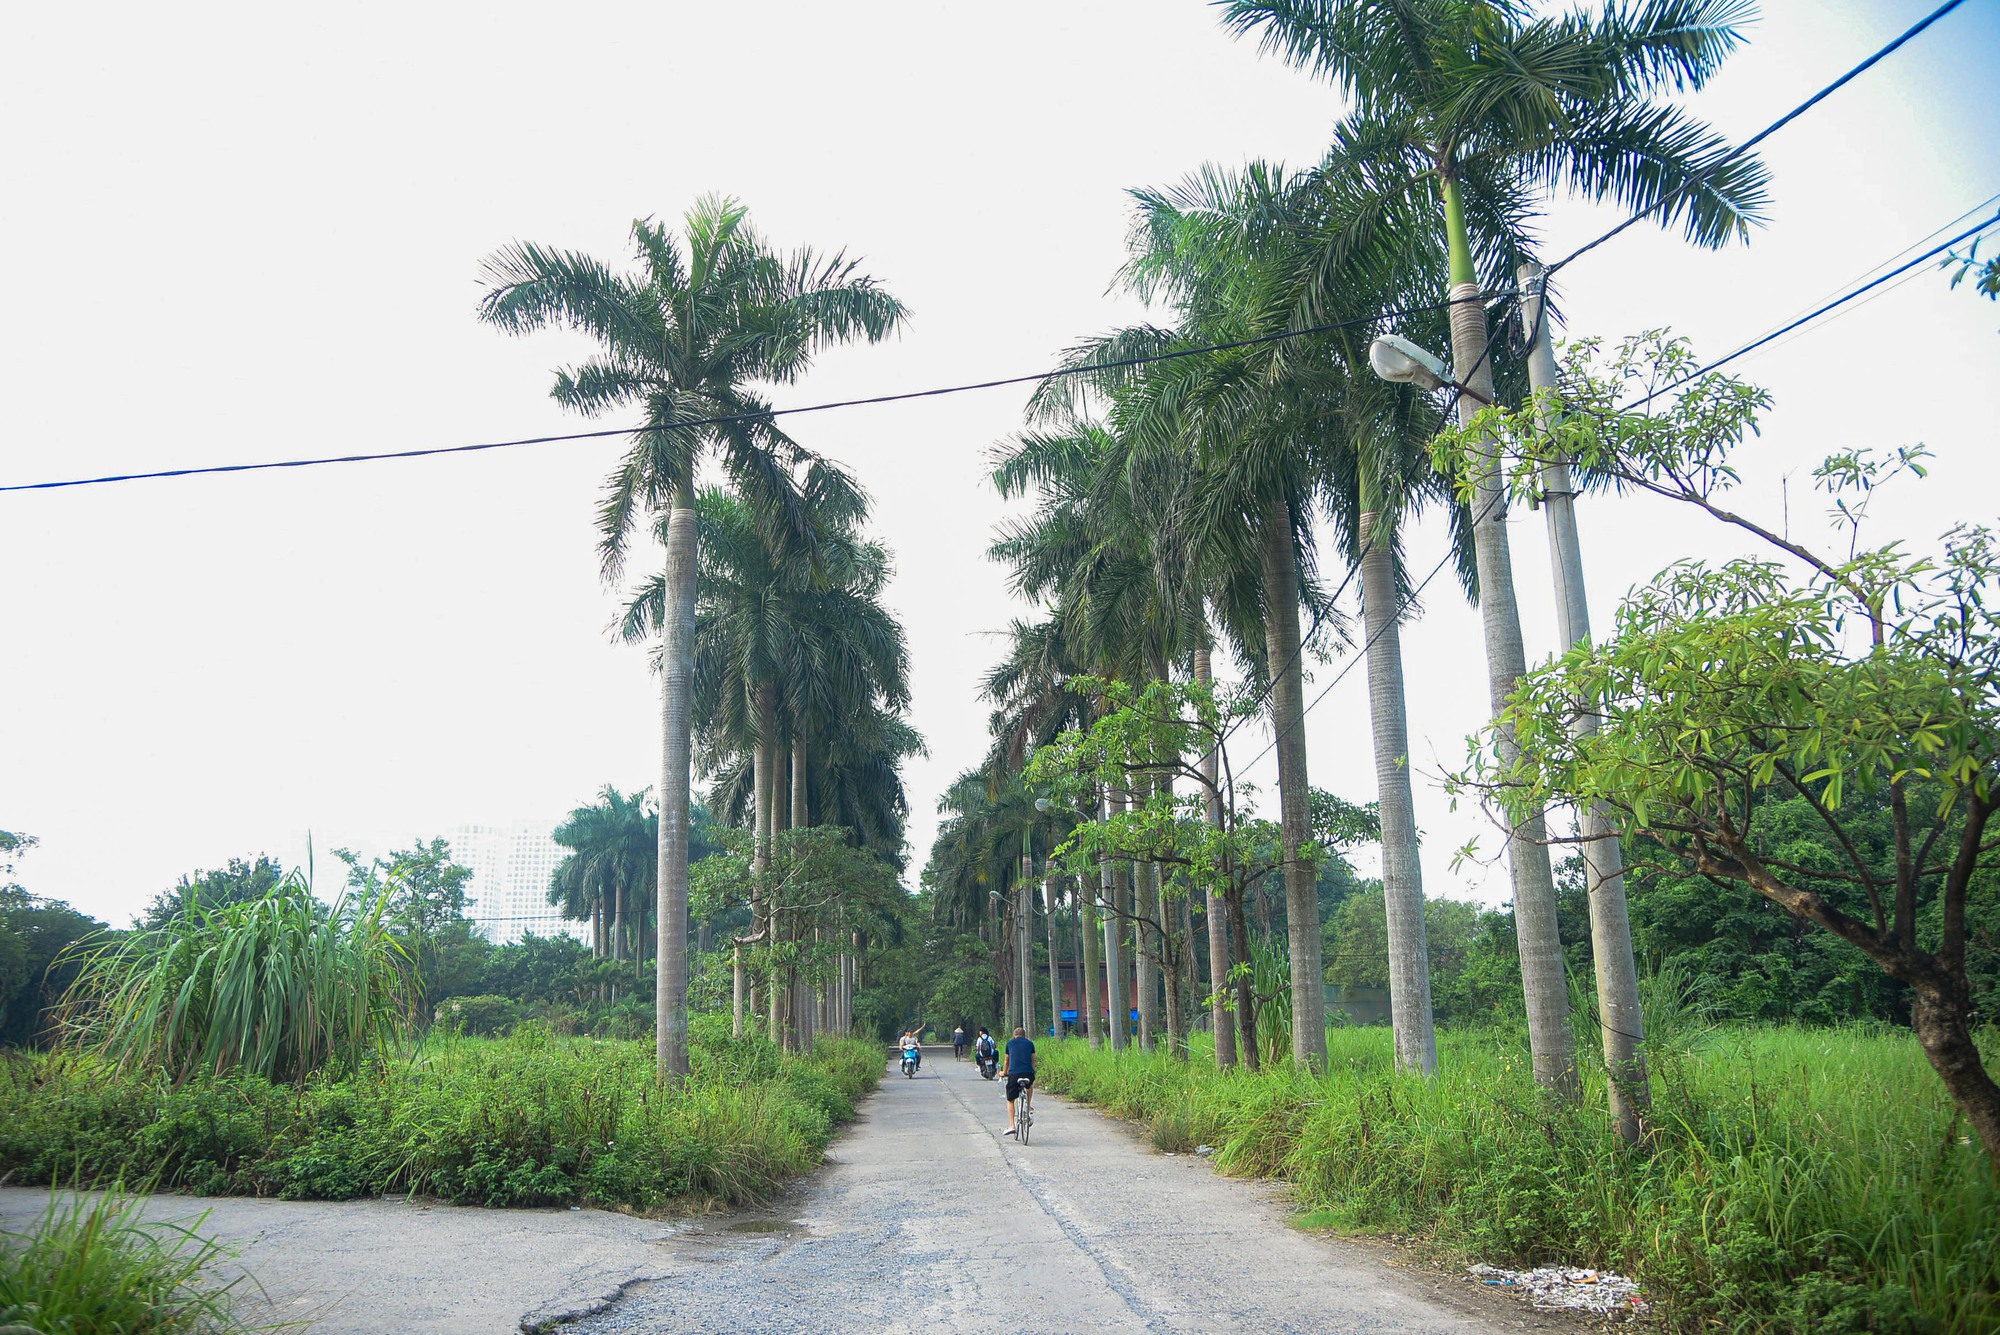 Khu sinh thái rộng hơn 15 ha ở quận Hoàng Mai bị bỏ hoang - Ảnh 2.